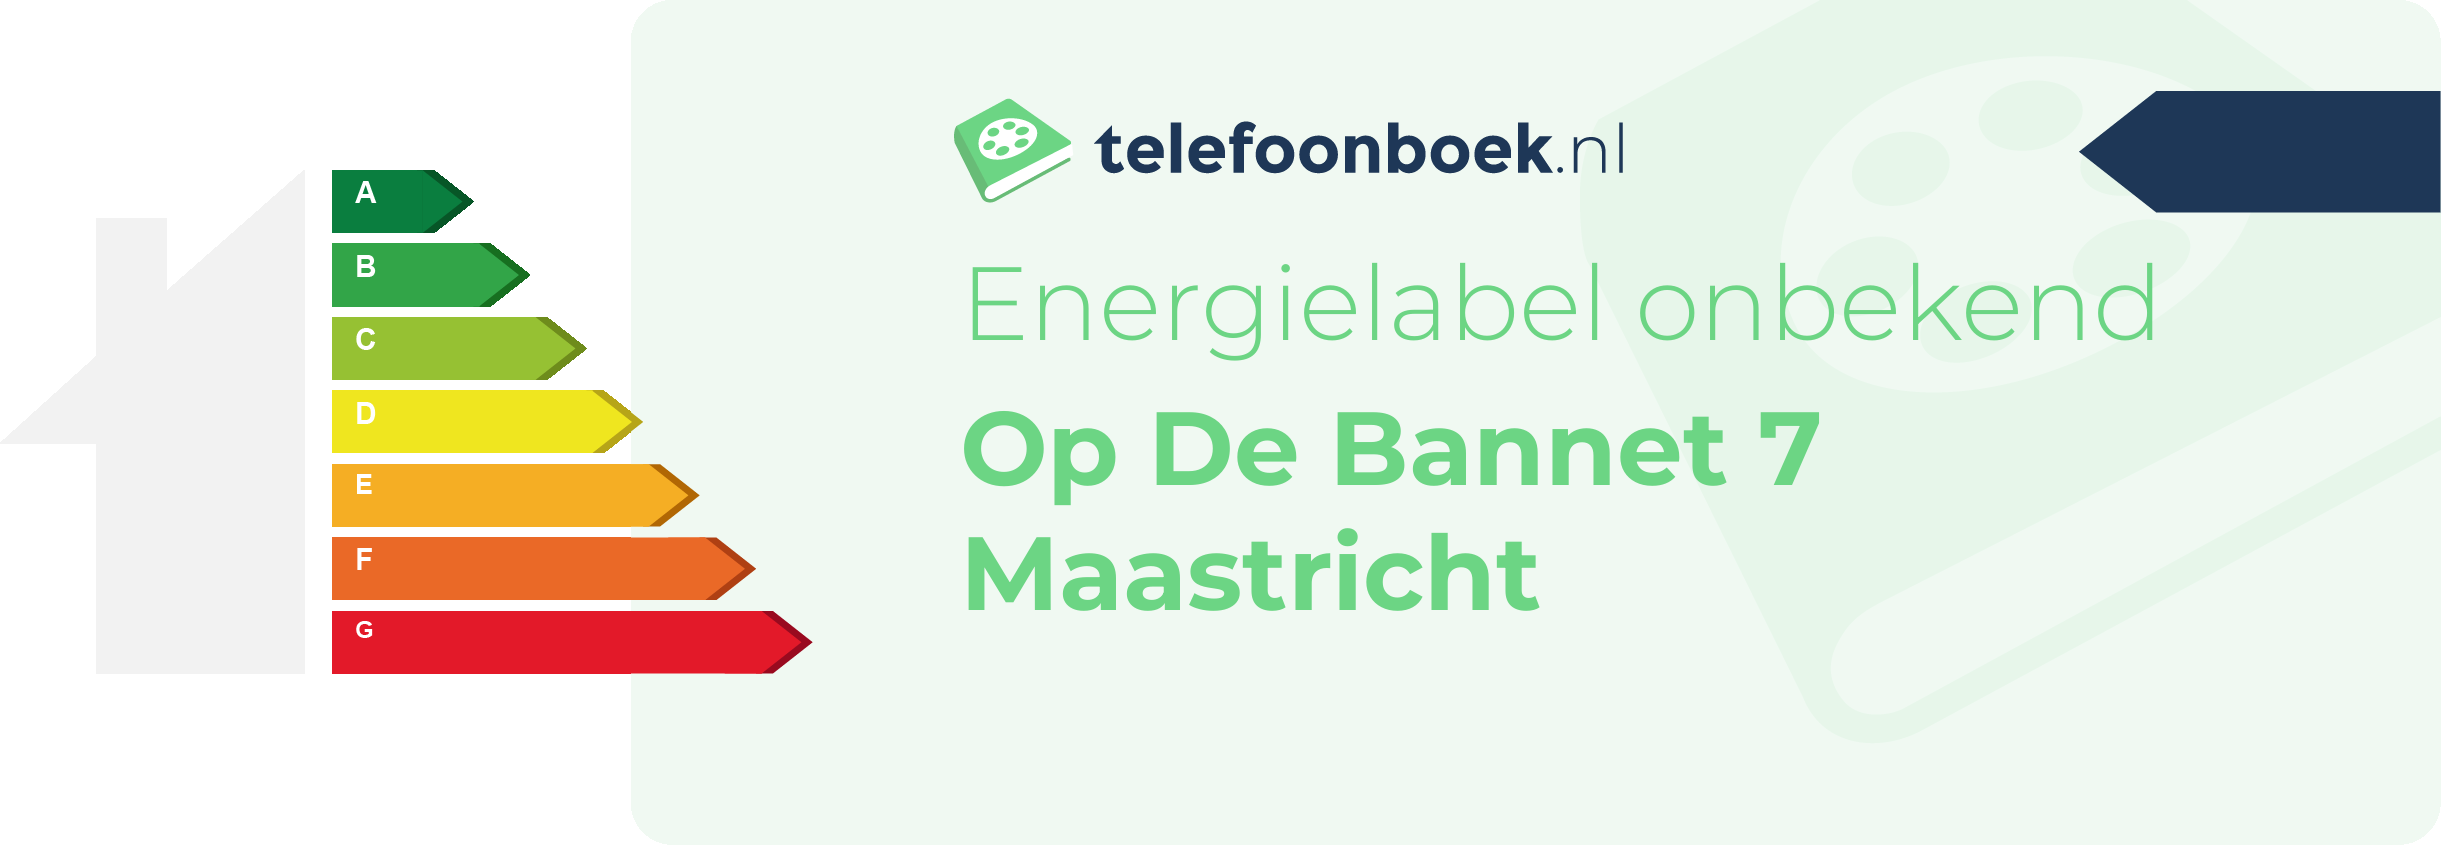 Energielabel Op De Bannet 7 Maastricht